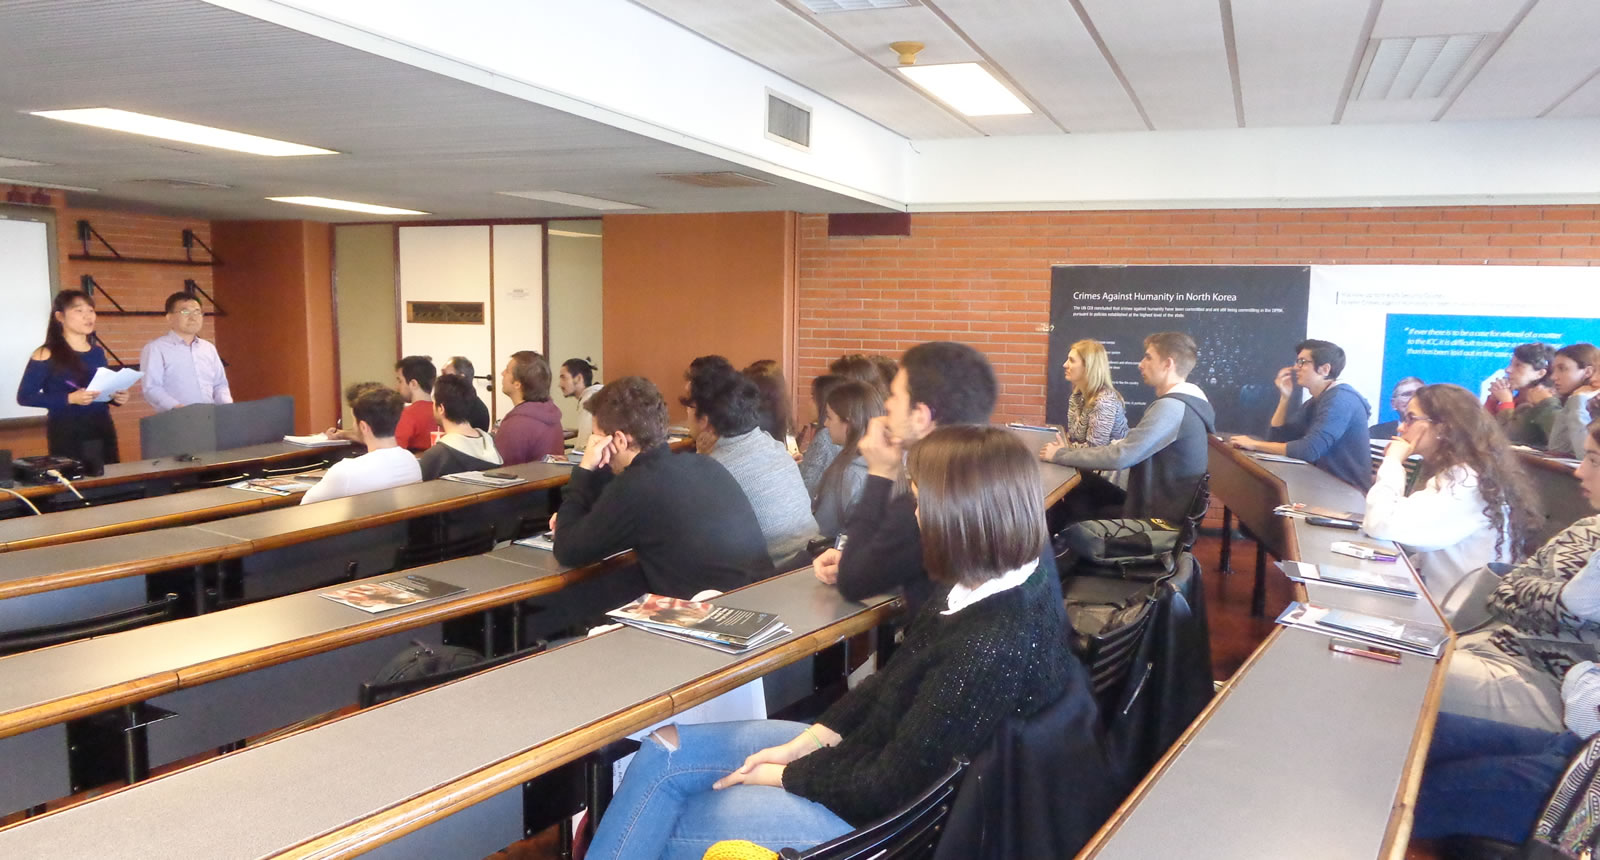 Presentación en la Universidad de Belgrano sobre la libertad de expresión y los DDHH en Corea del Norte